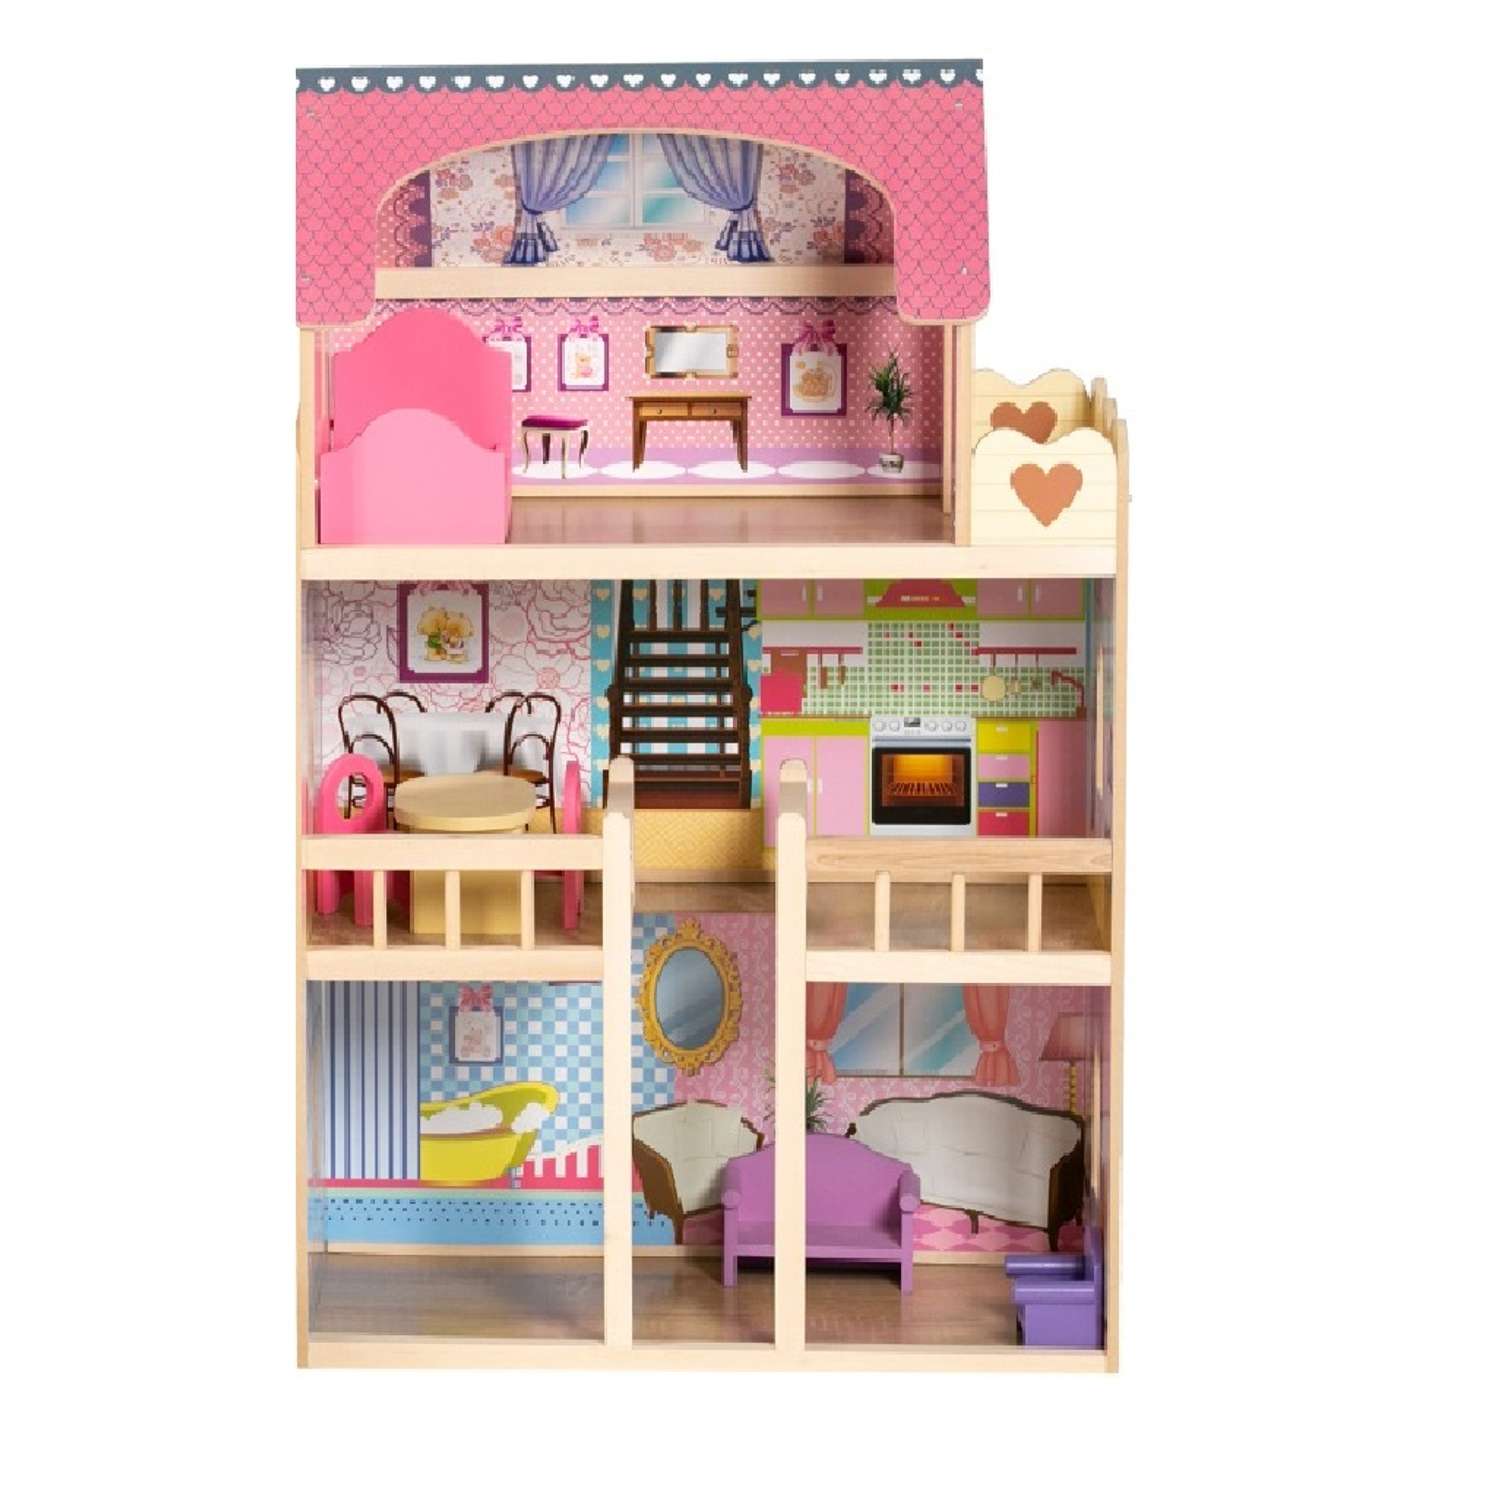 Дом для куклы DH603 деревянный с набором мебели